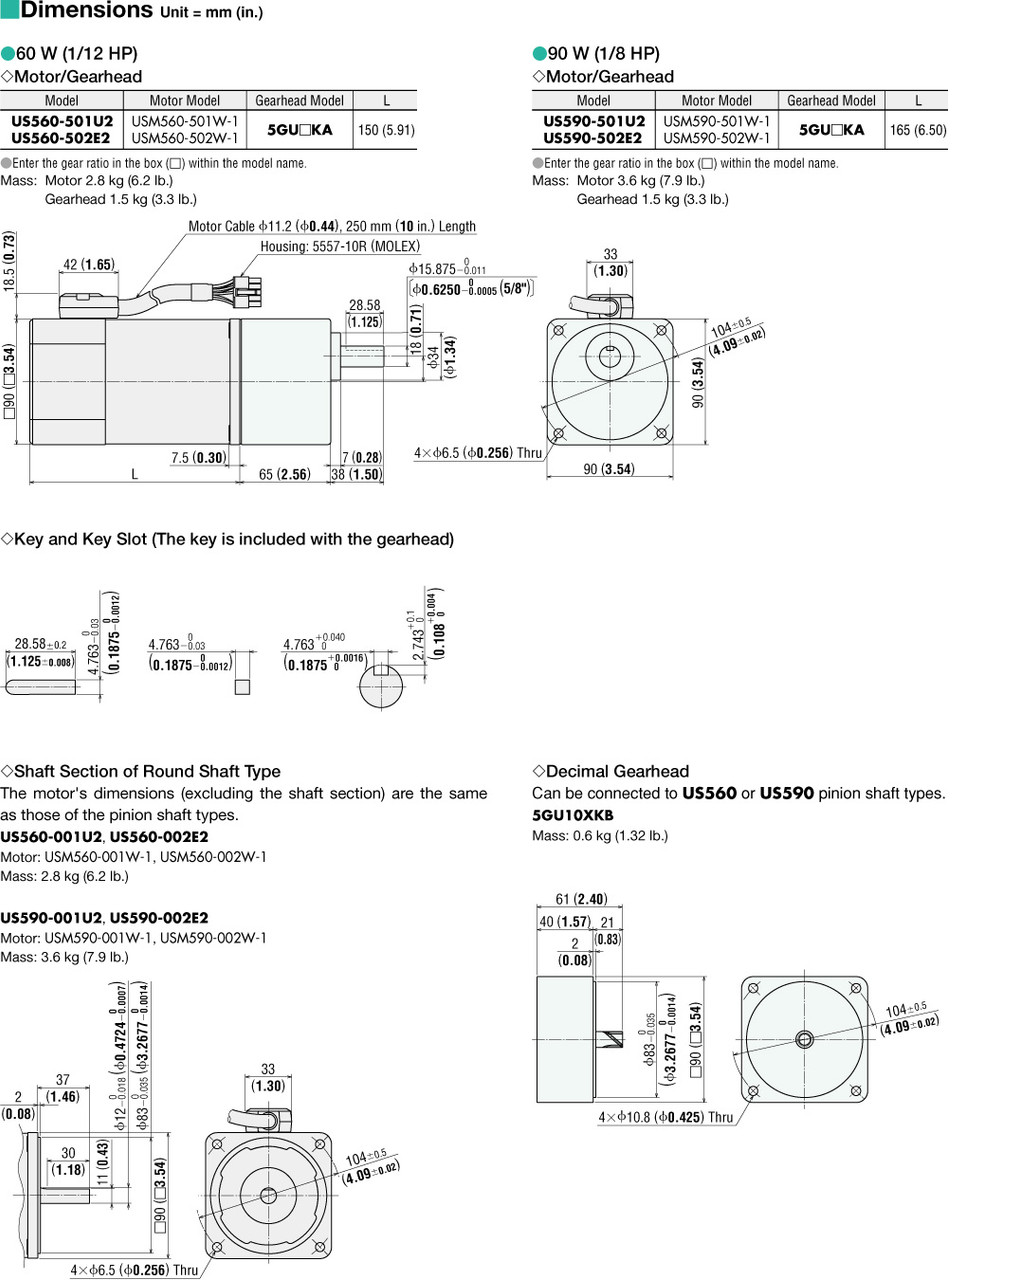 USM560-502W-1 / 5GU36KA - Dimensions